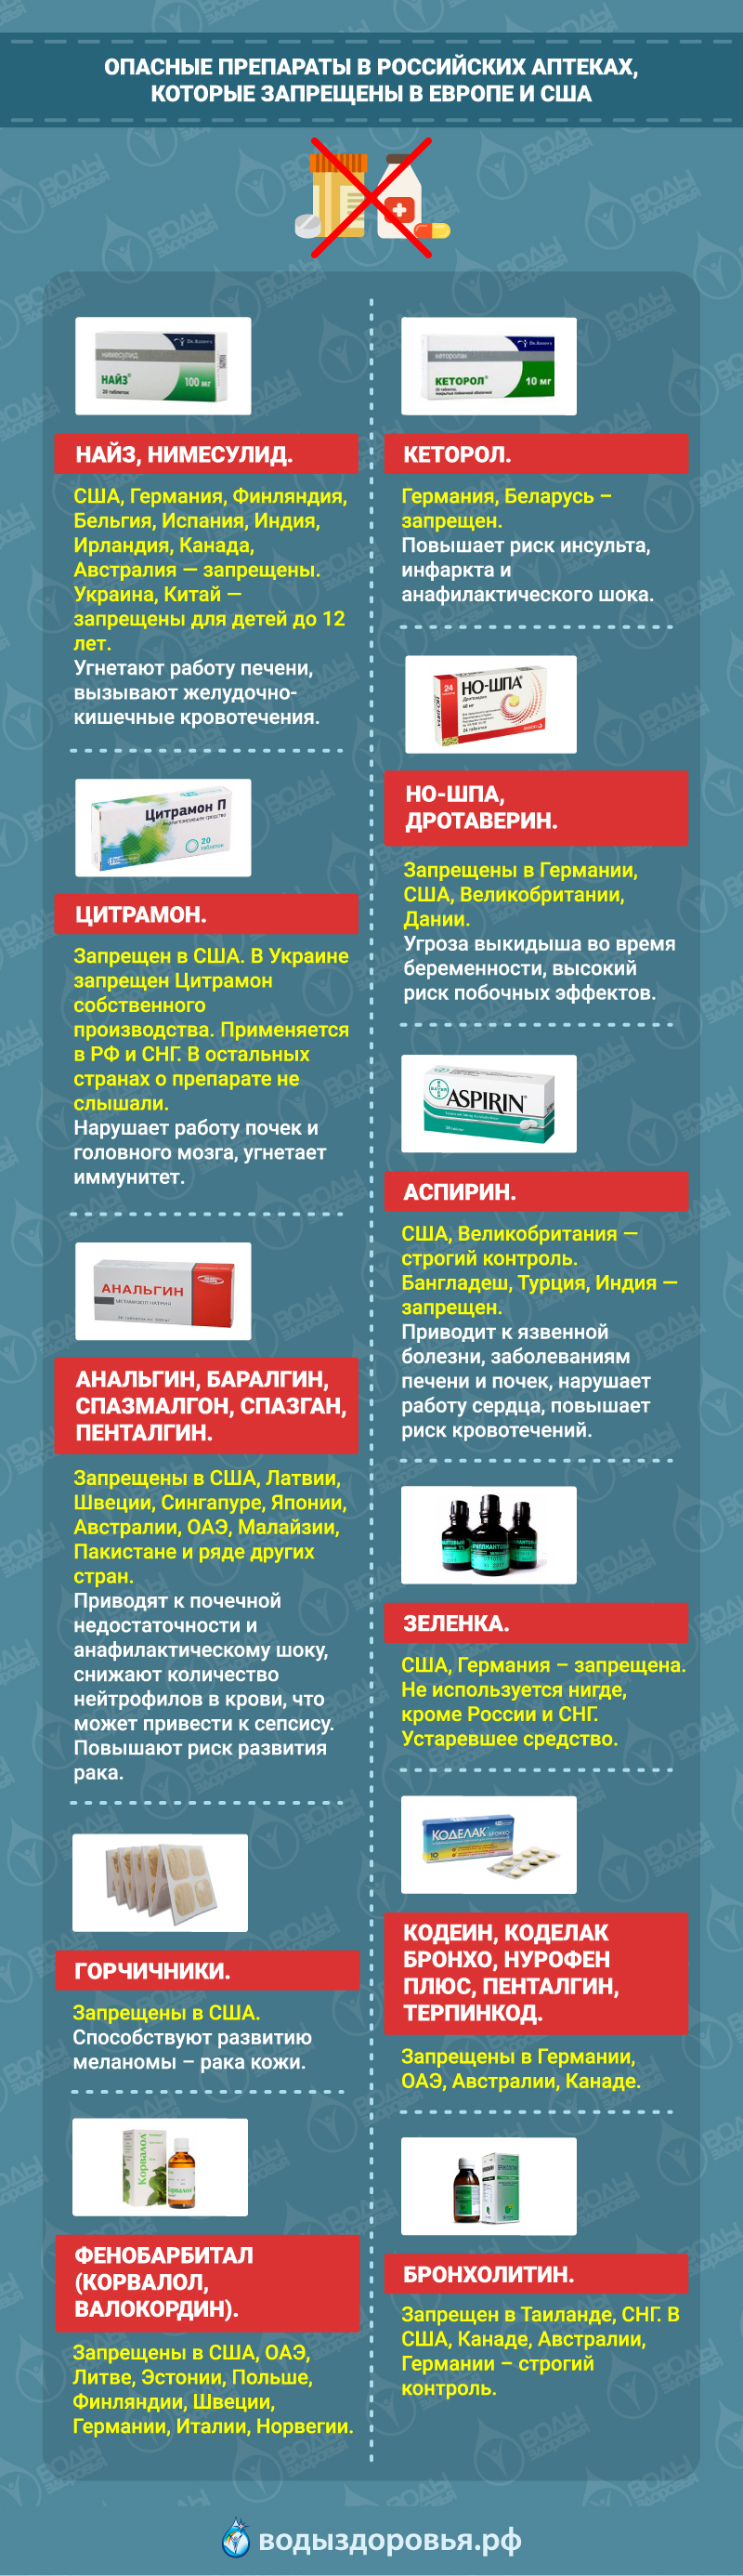 Опасные препараты в российских аптеках, которые запрещены в Европе и США